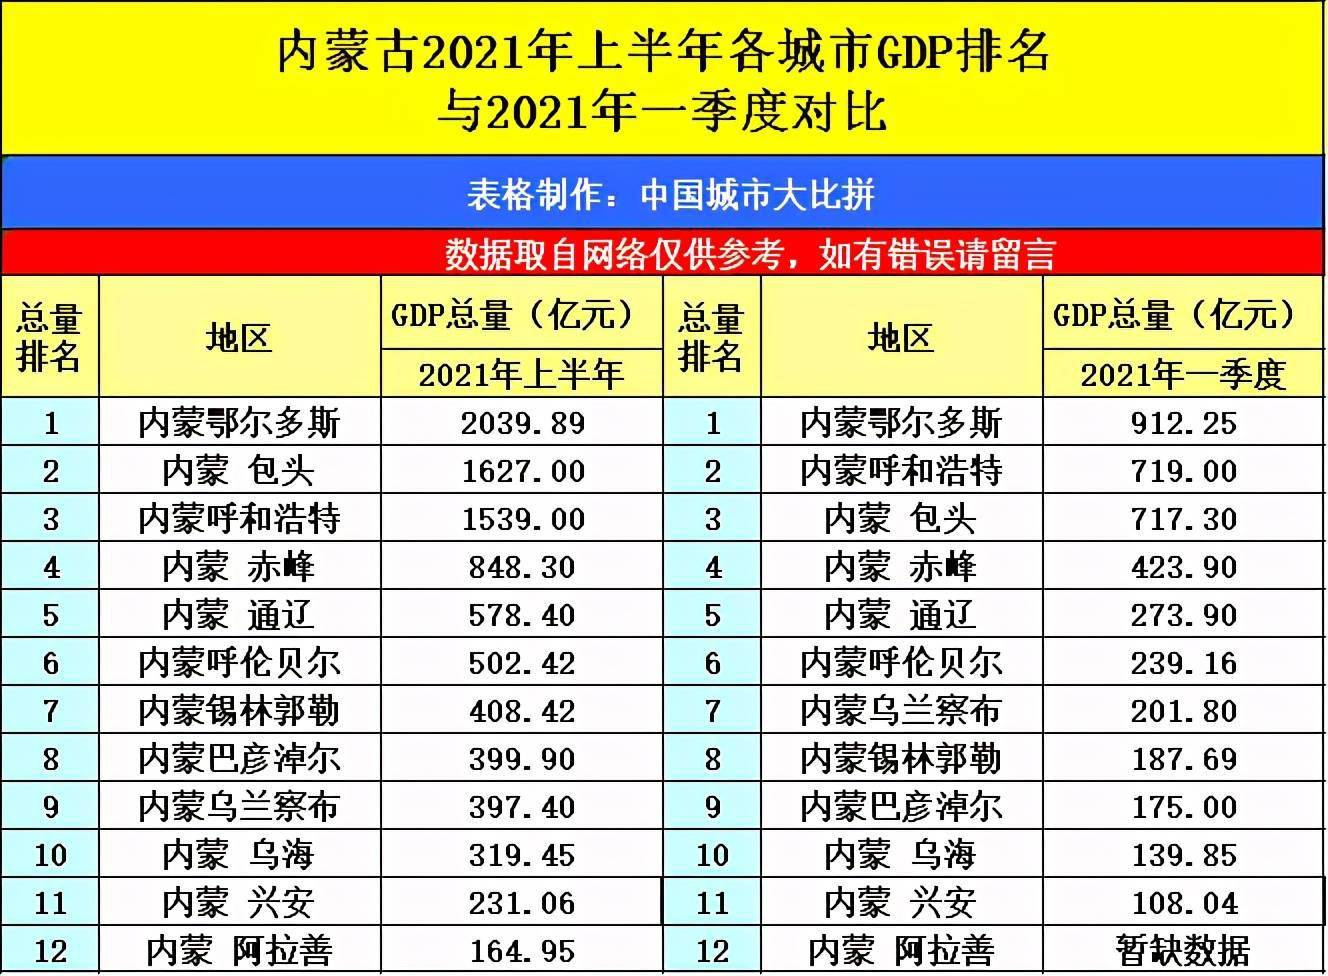 2021内蒙古城市gdp排名_辽宁大连与黑龙江哈尔滨的2021年一季度GDP谁更高